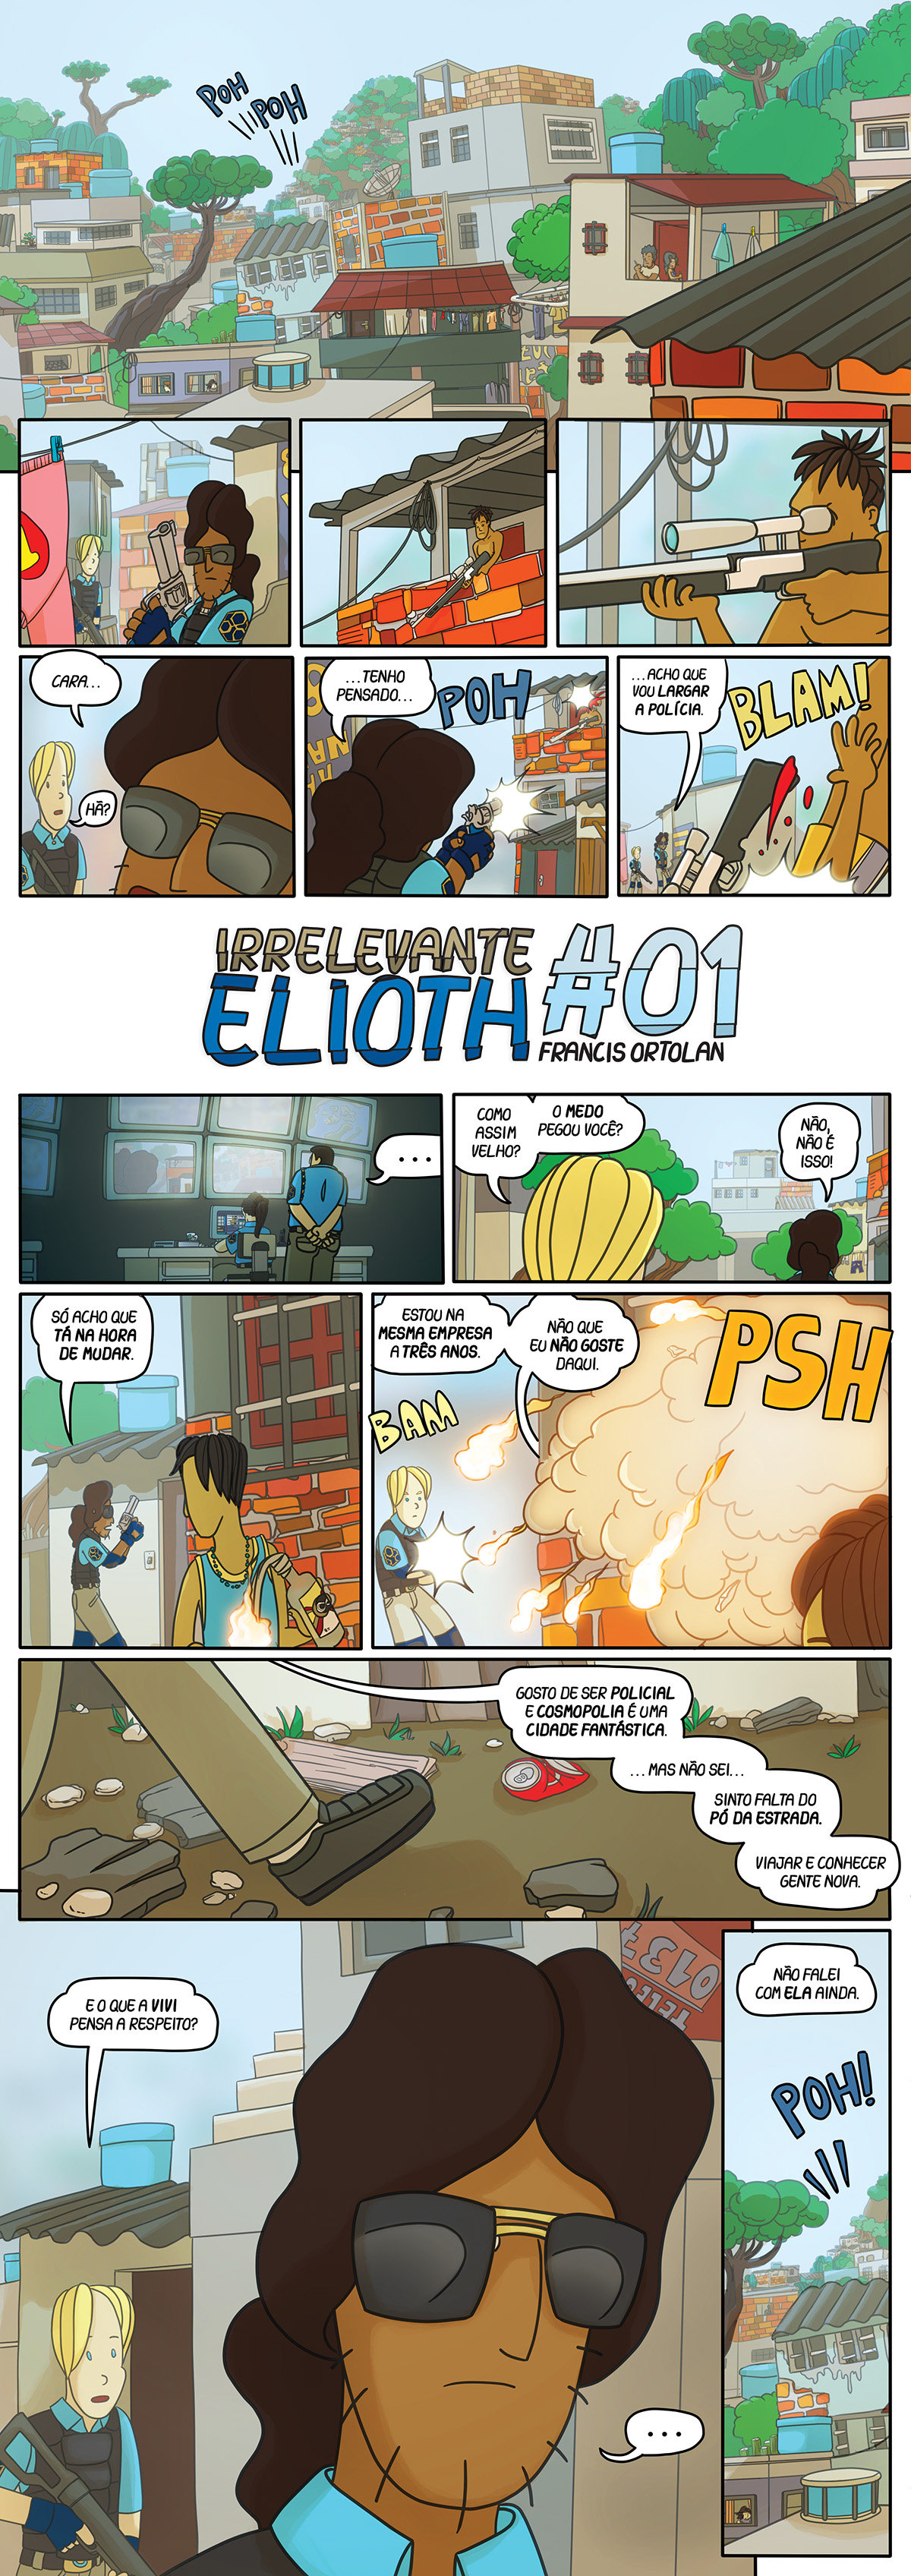 Irrelevante Elioth #01 Mesmo no meio de uma missão arriscada o Policial Elioh não consegue esquecer seus problemas pessoais.